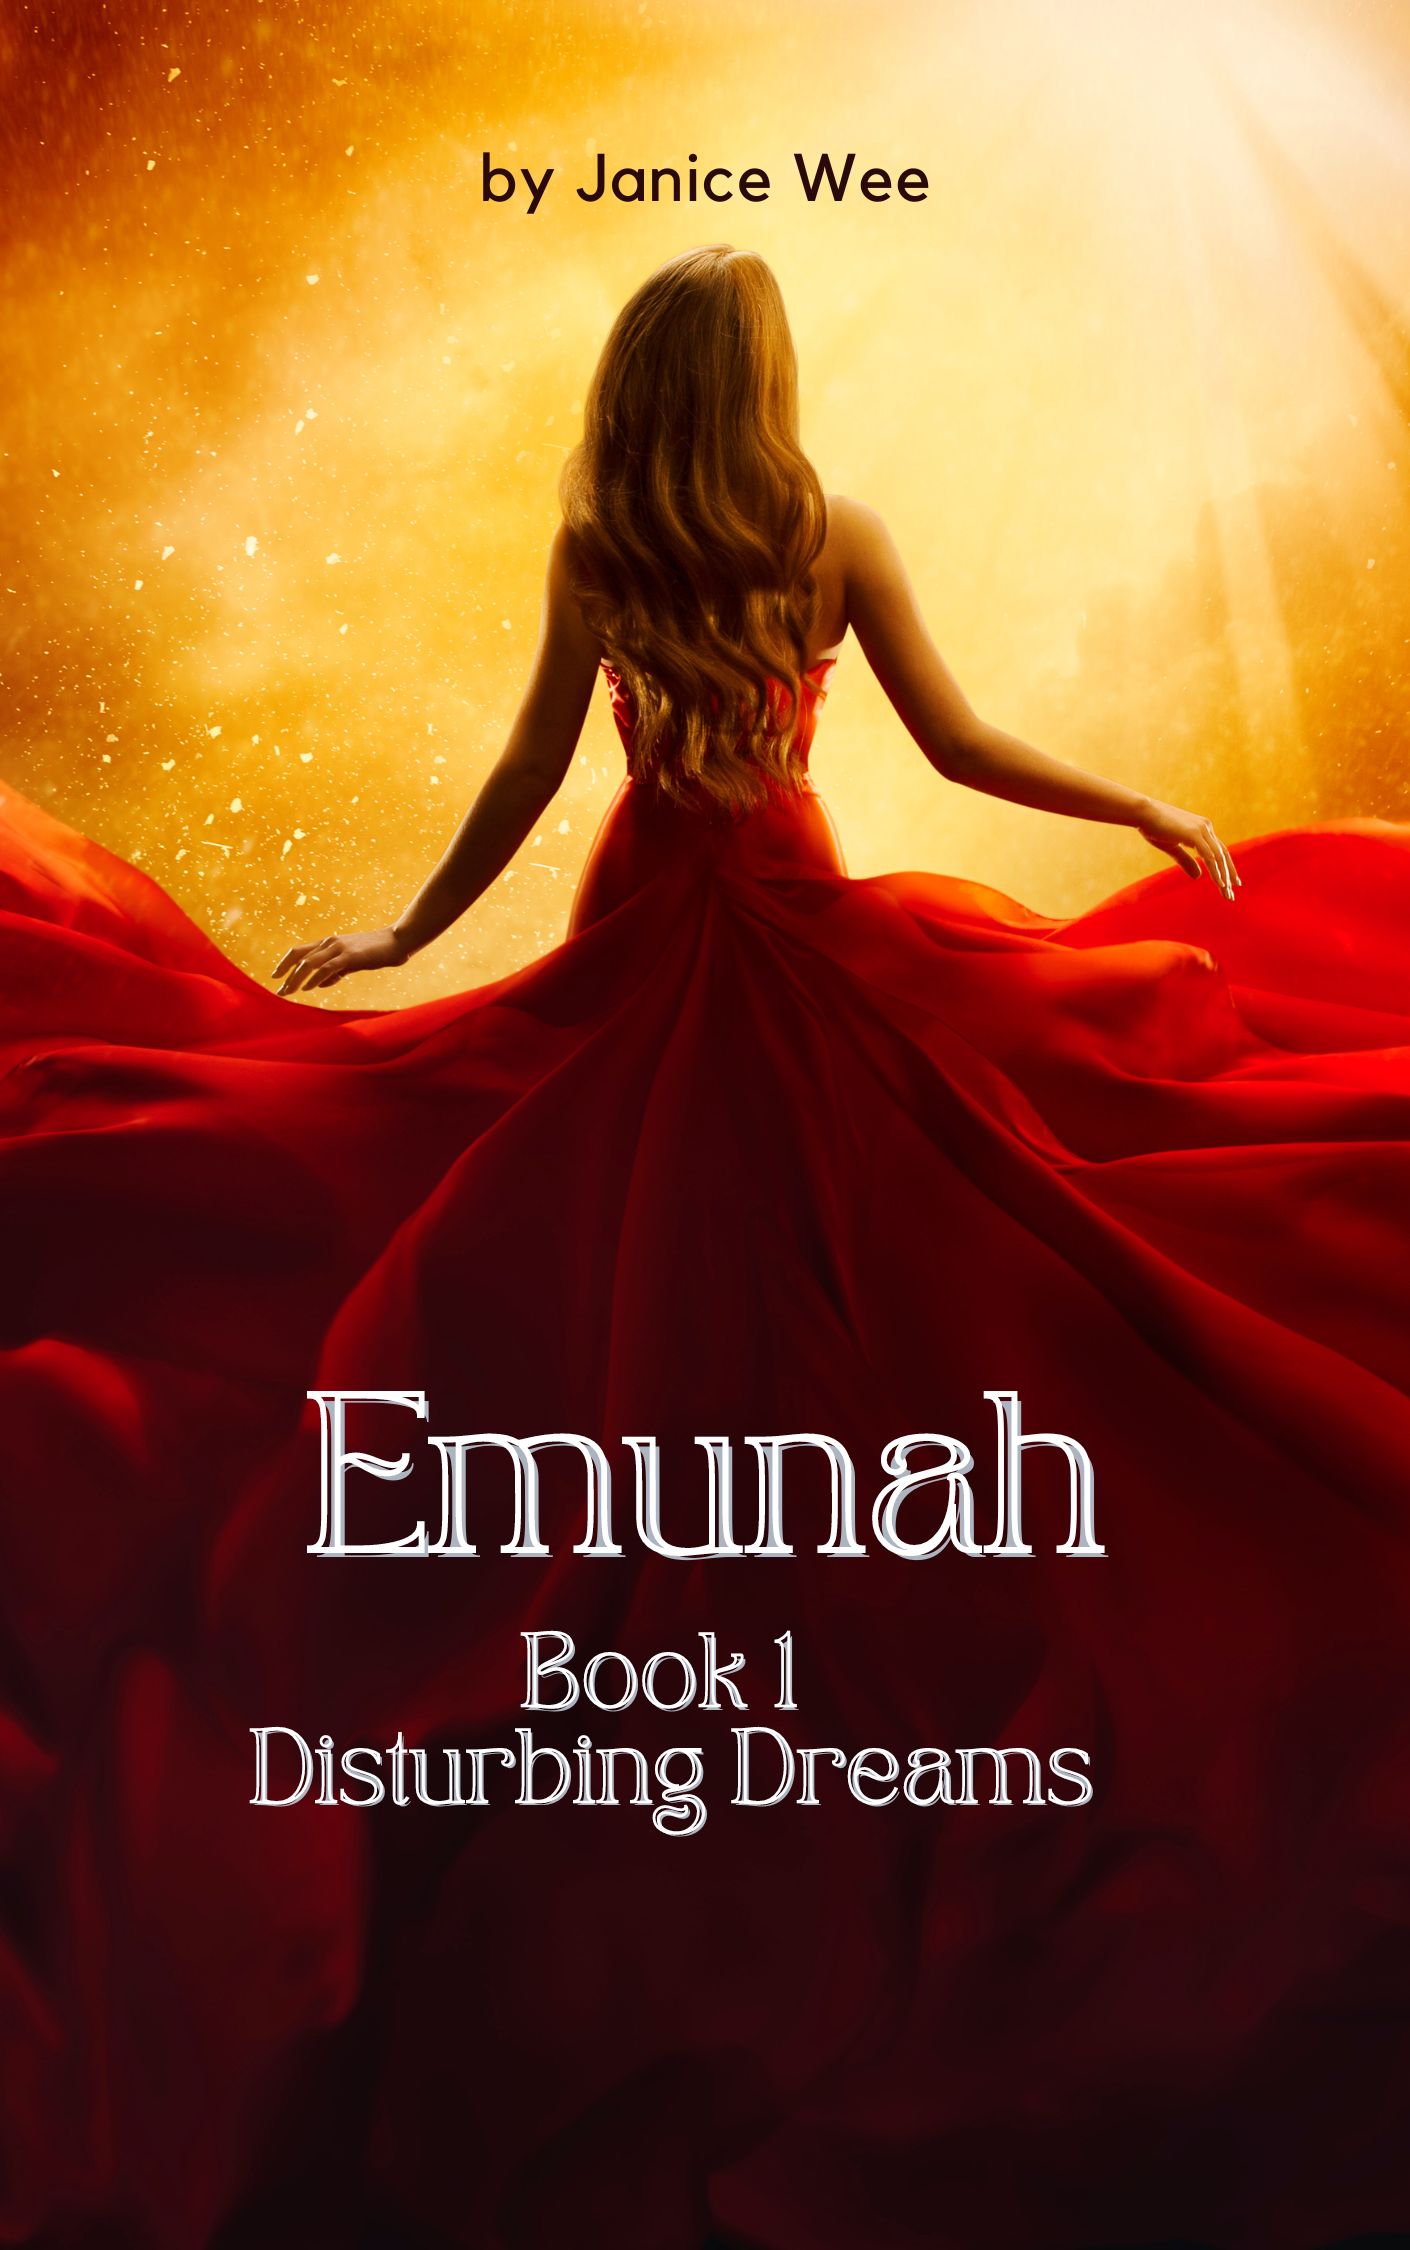 Emunah Chronicles